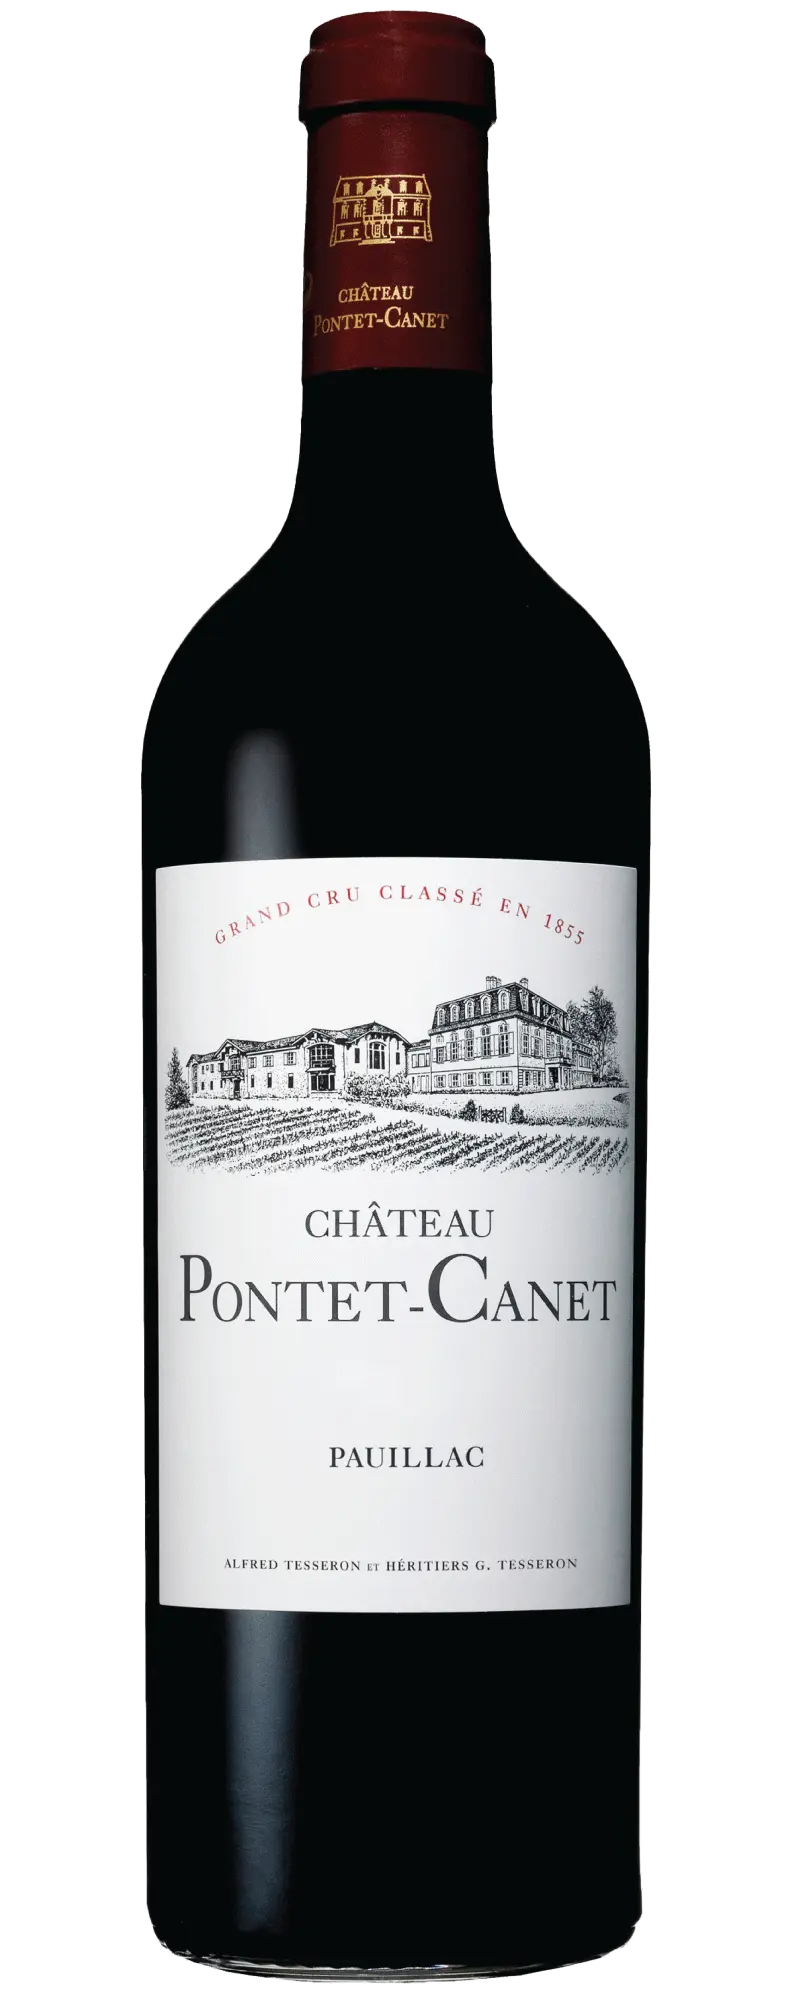 Chateau Pontet-Canet, Pauillac 2010 (1x75cl)